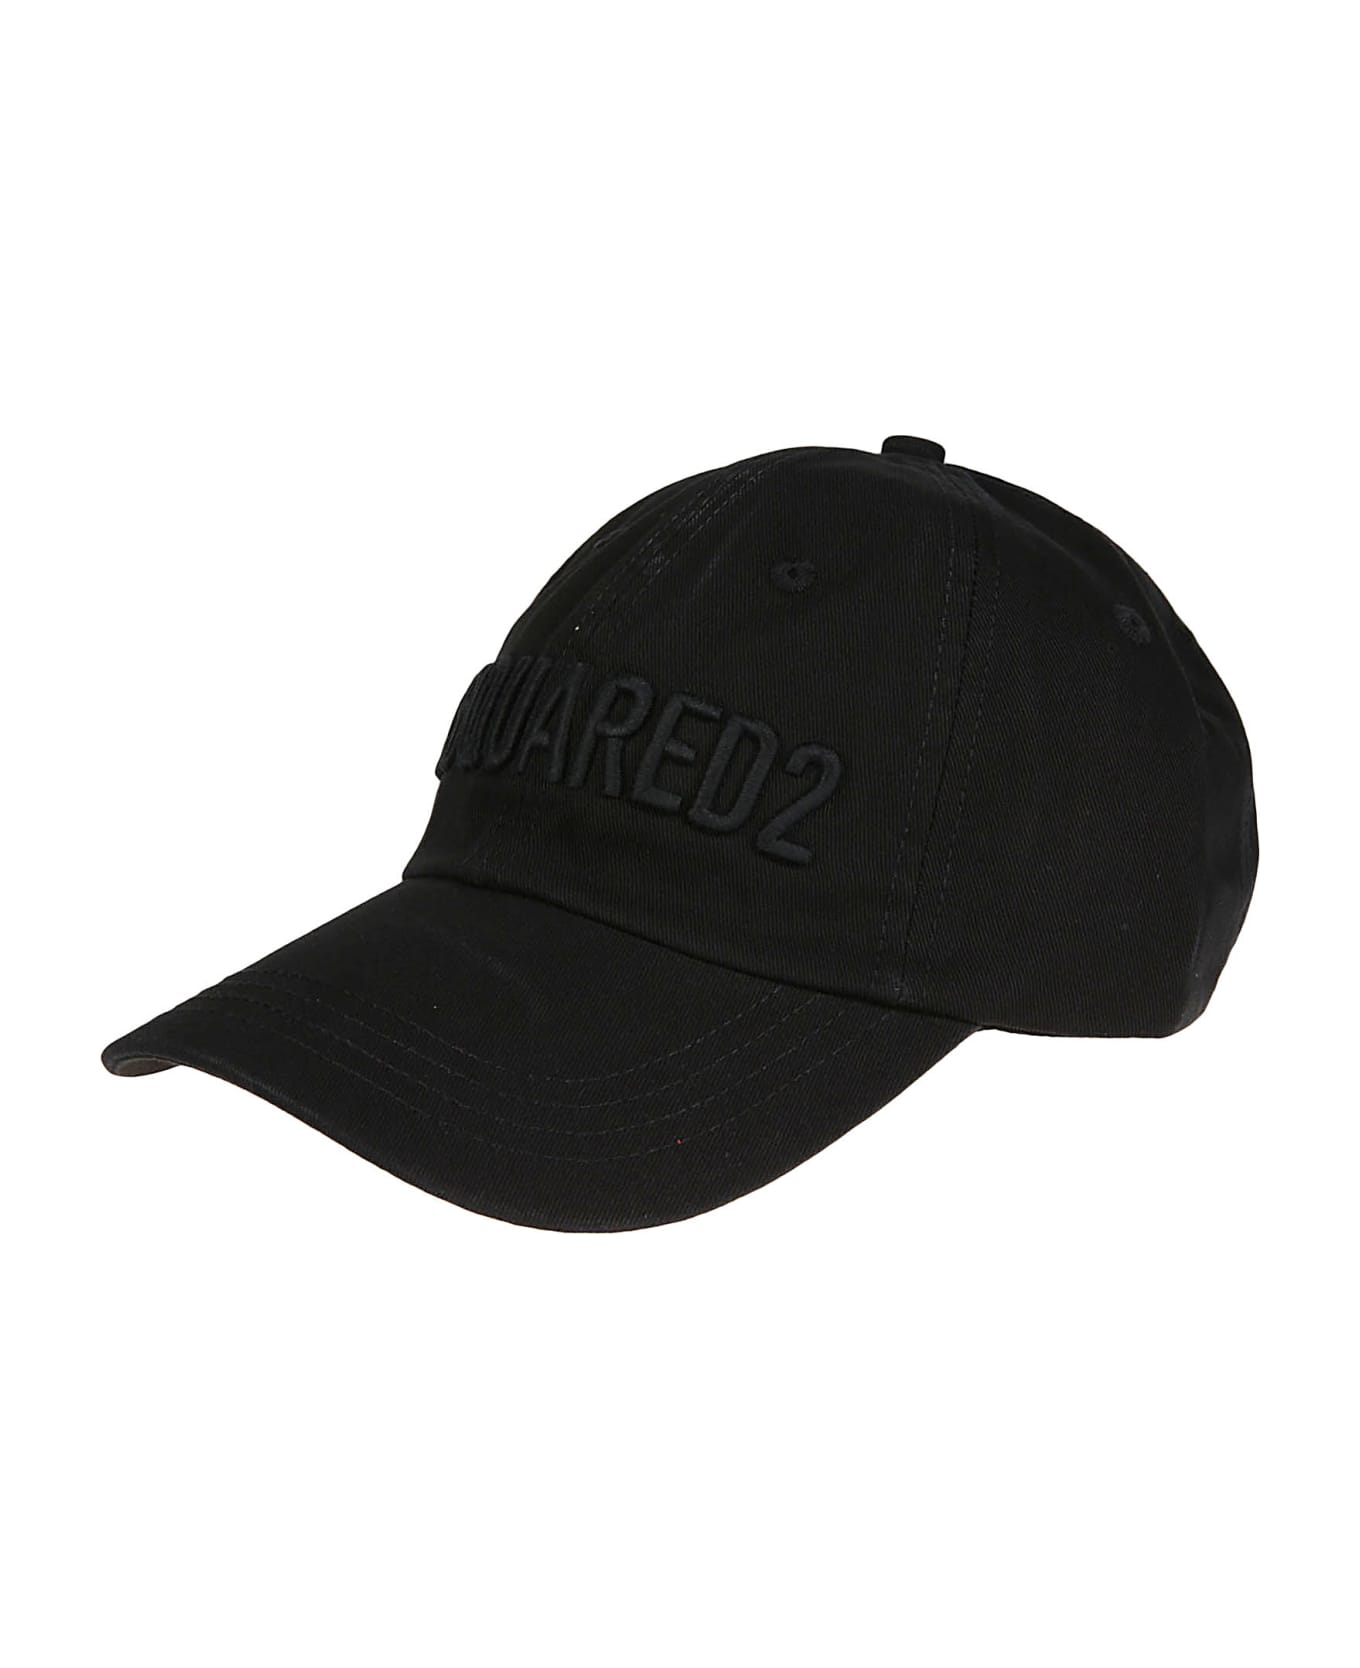 Dsquared2 Technicolor Baseball Cap - Nero/nero 帽子